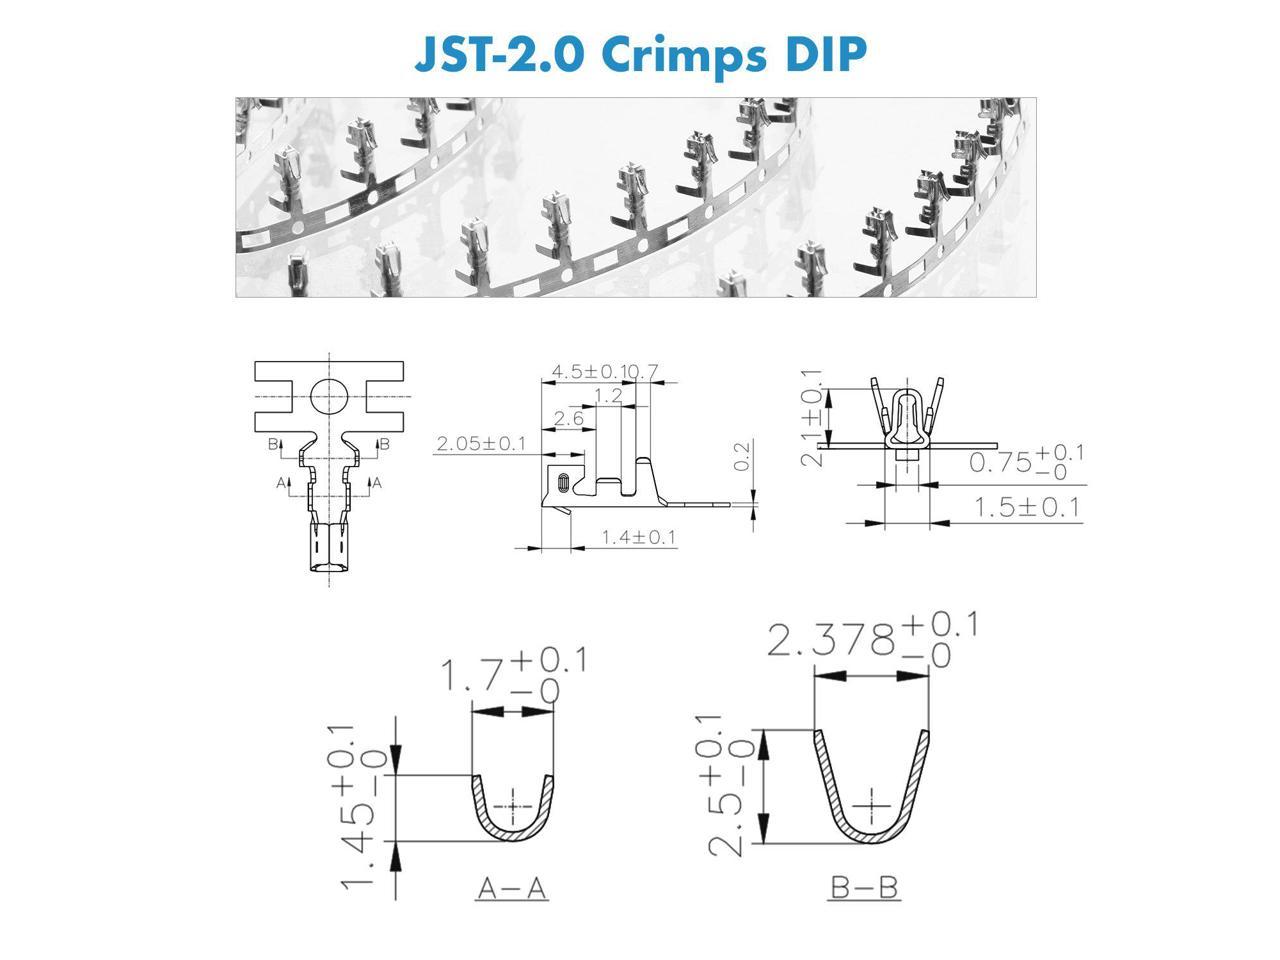 JST PH 2.0 mm pitch Female Pin Header 750 Pieces 2.0 mm JST-PH JST Connecteur Kit